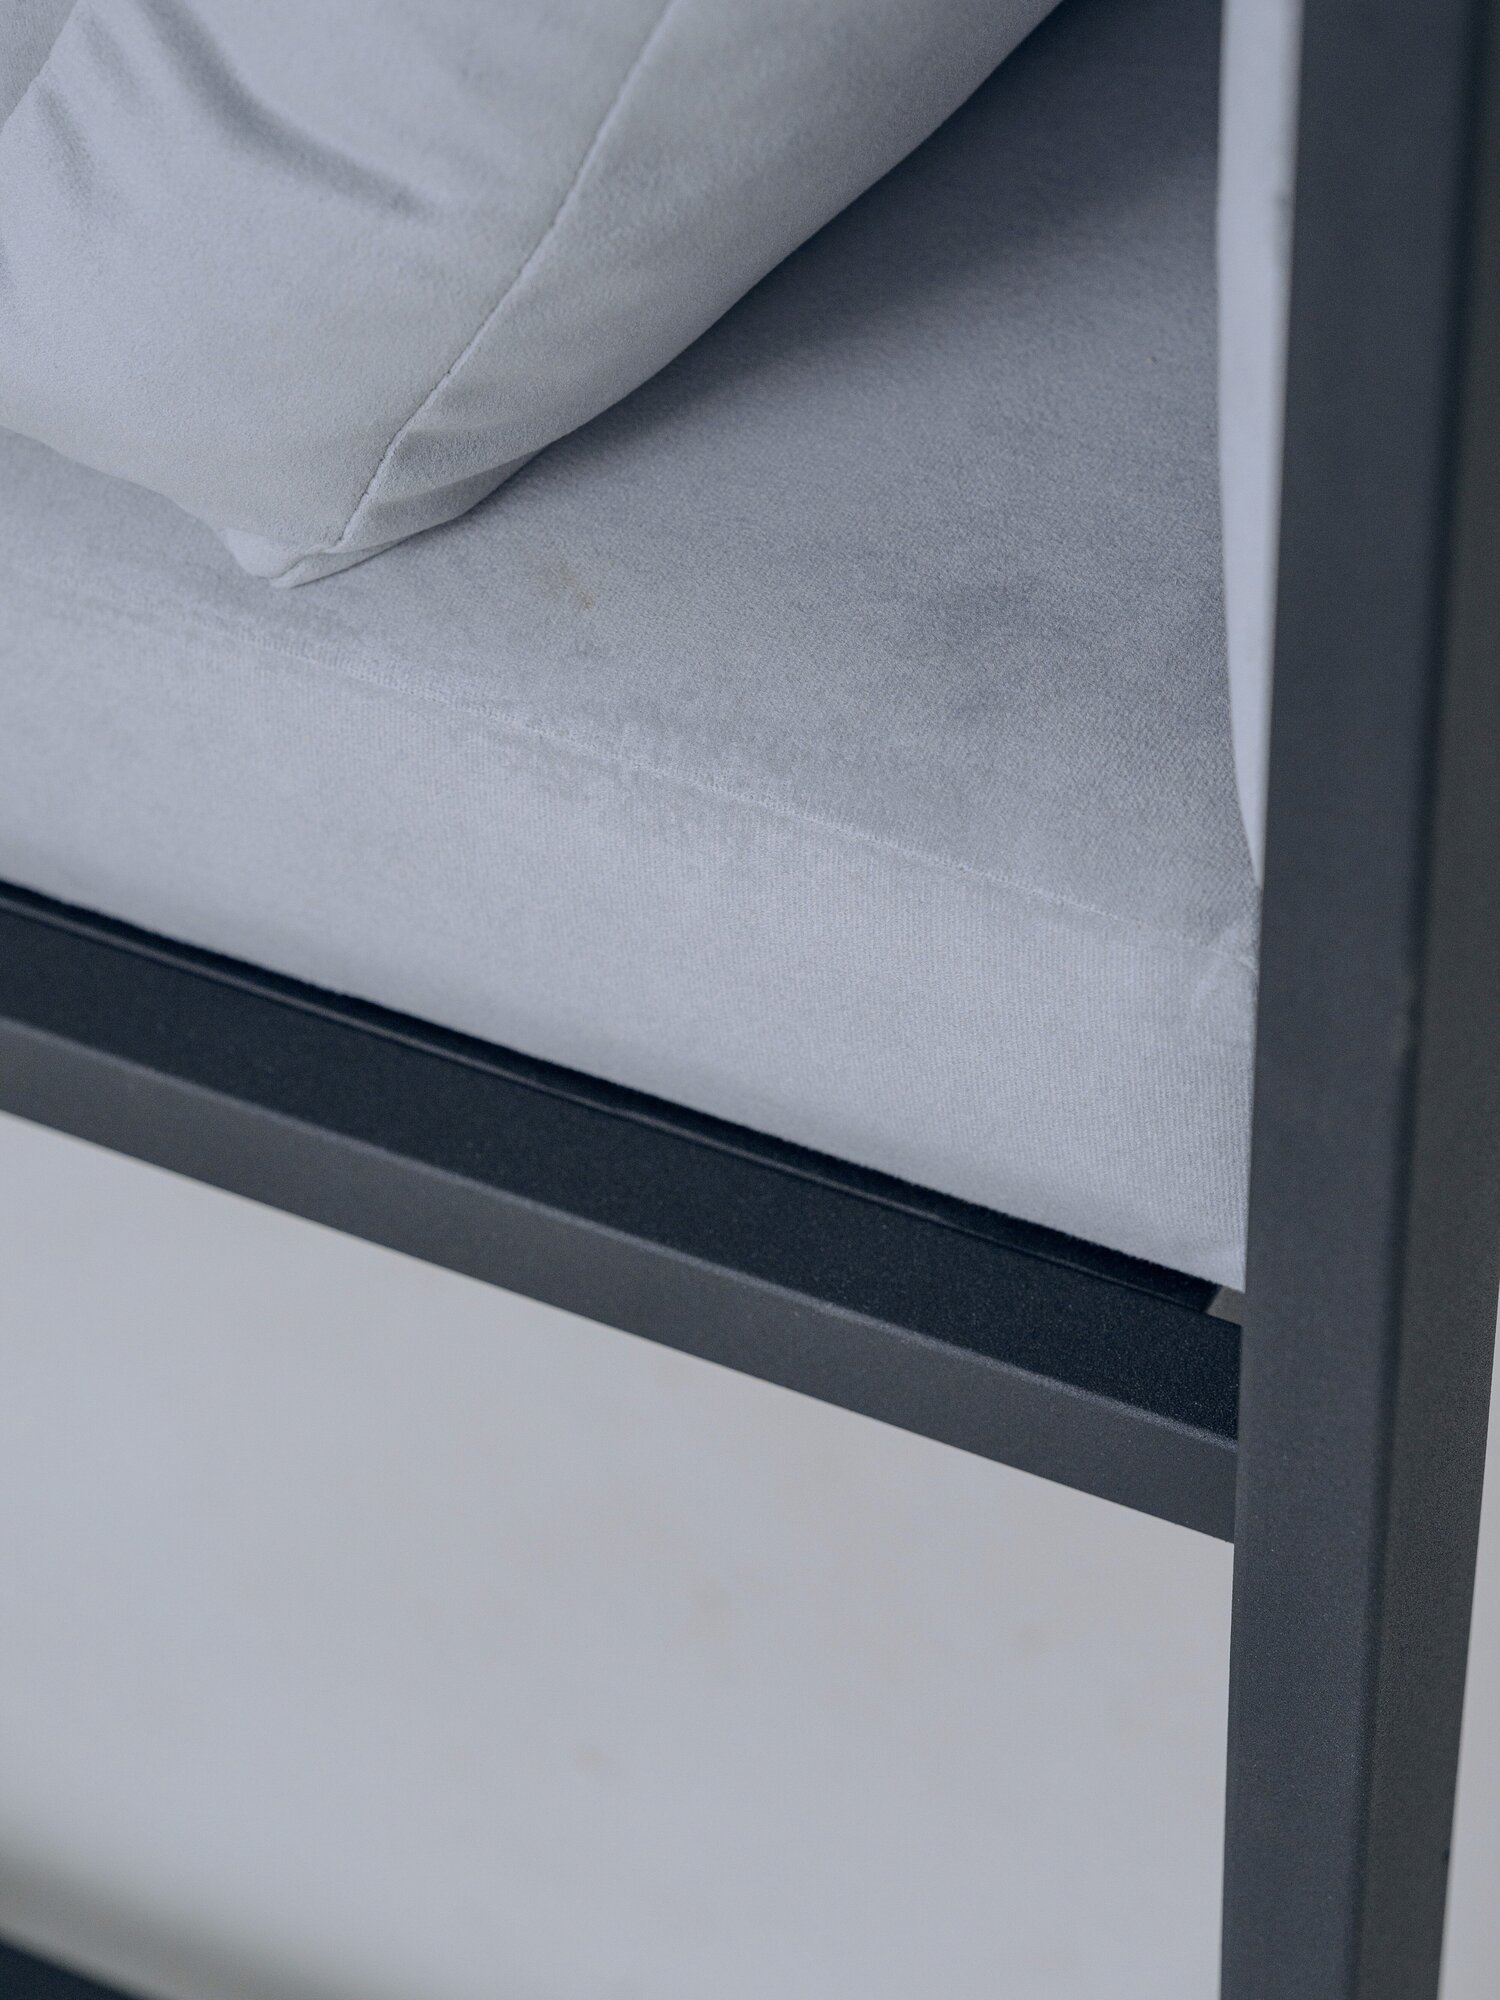 Кресло лофт Curl 70х70, обивка: велюр цвет: серый, в гостиную, офис, кафе, холл, зал ожидания, на кухню - фотография № 10